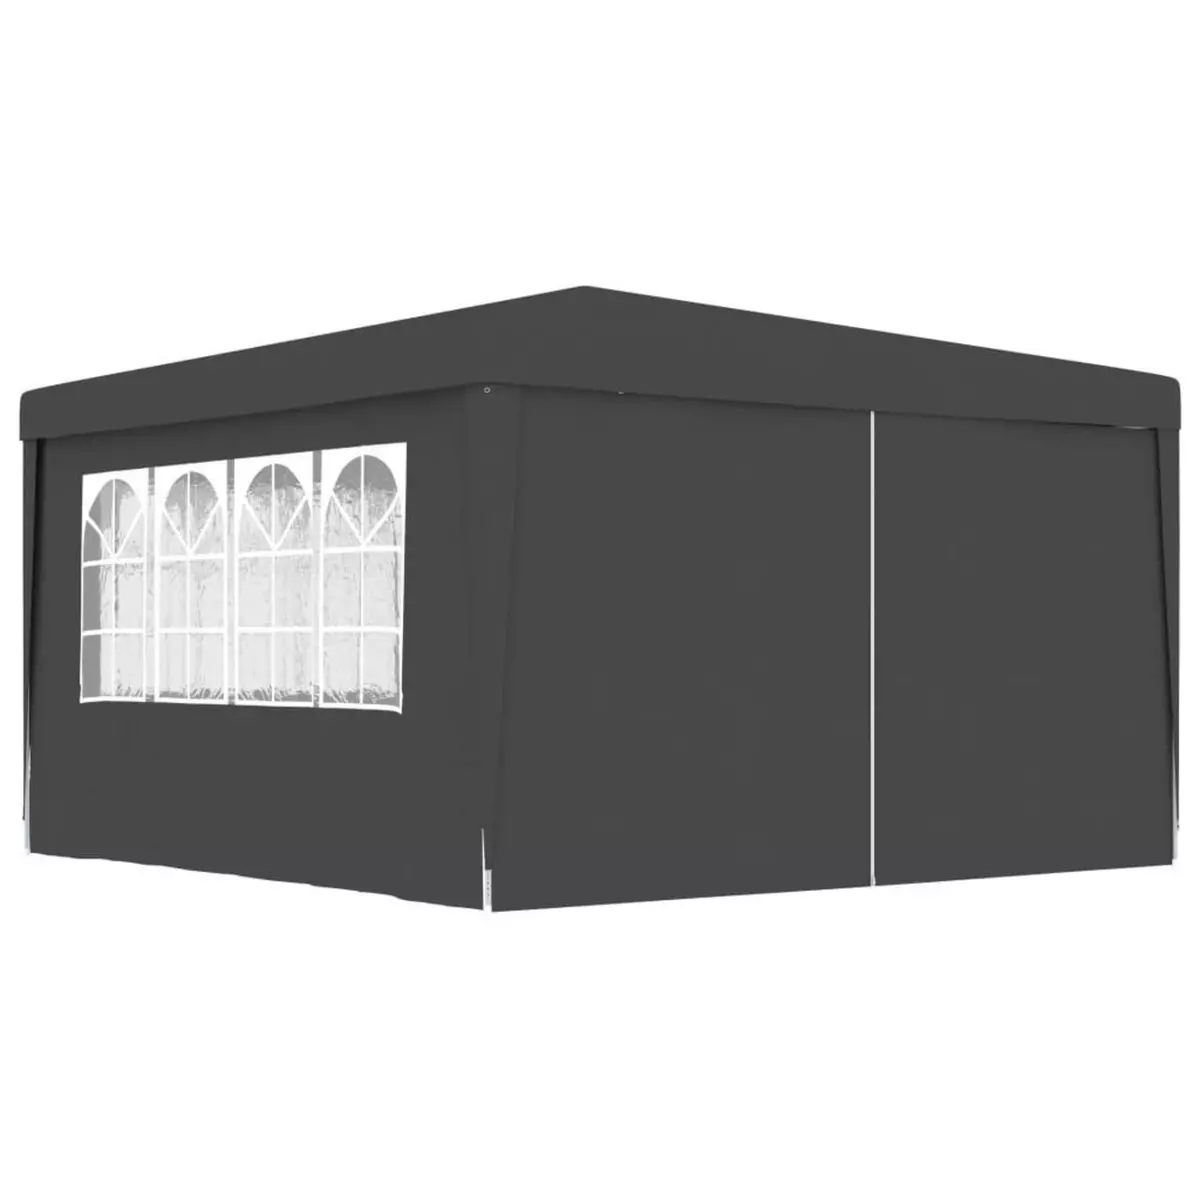 VIDAXL Tente de reception et parois laterales 4x4 m Anthracite 90 g/m^2